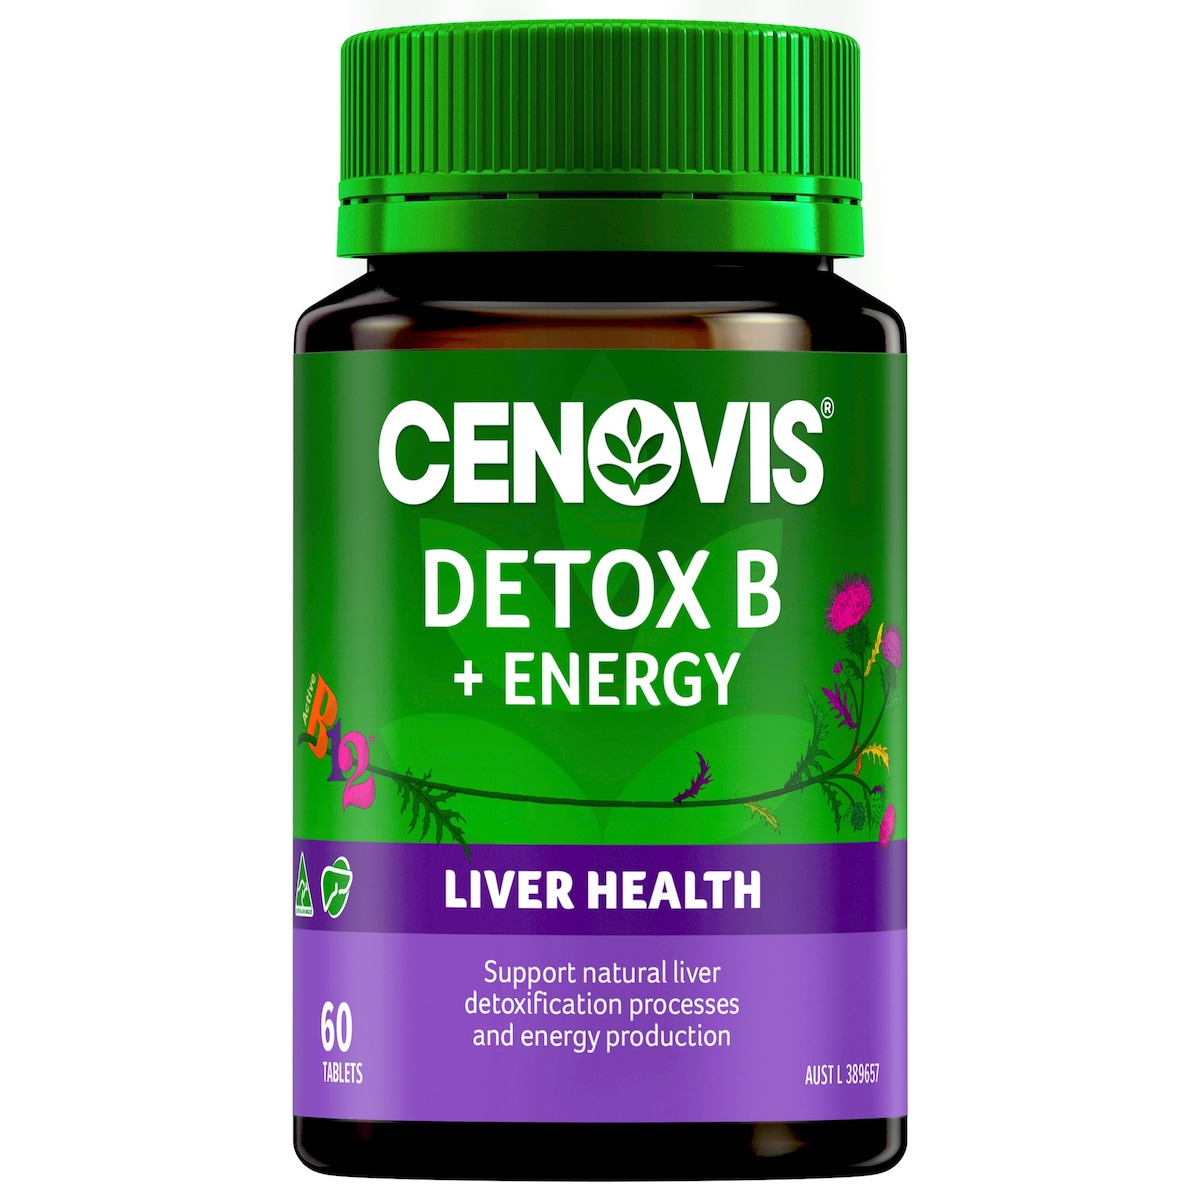 Liver detox for energy